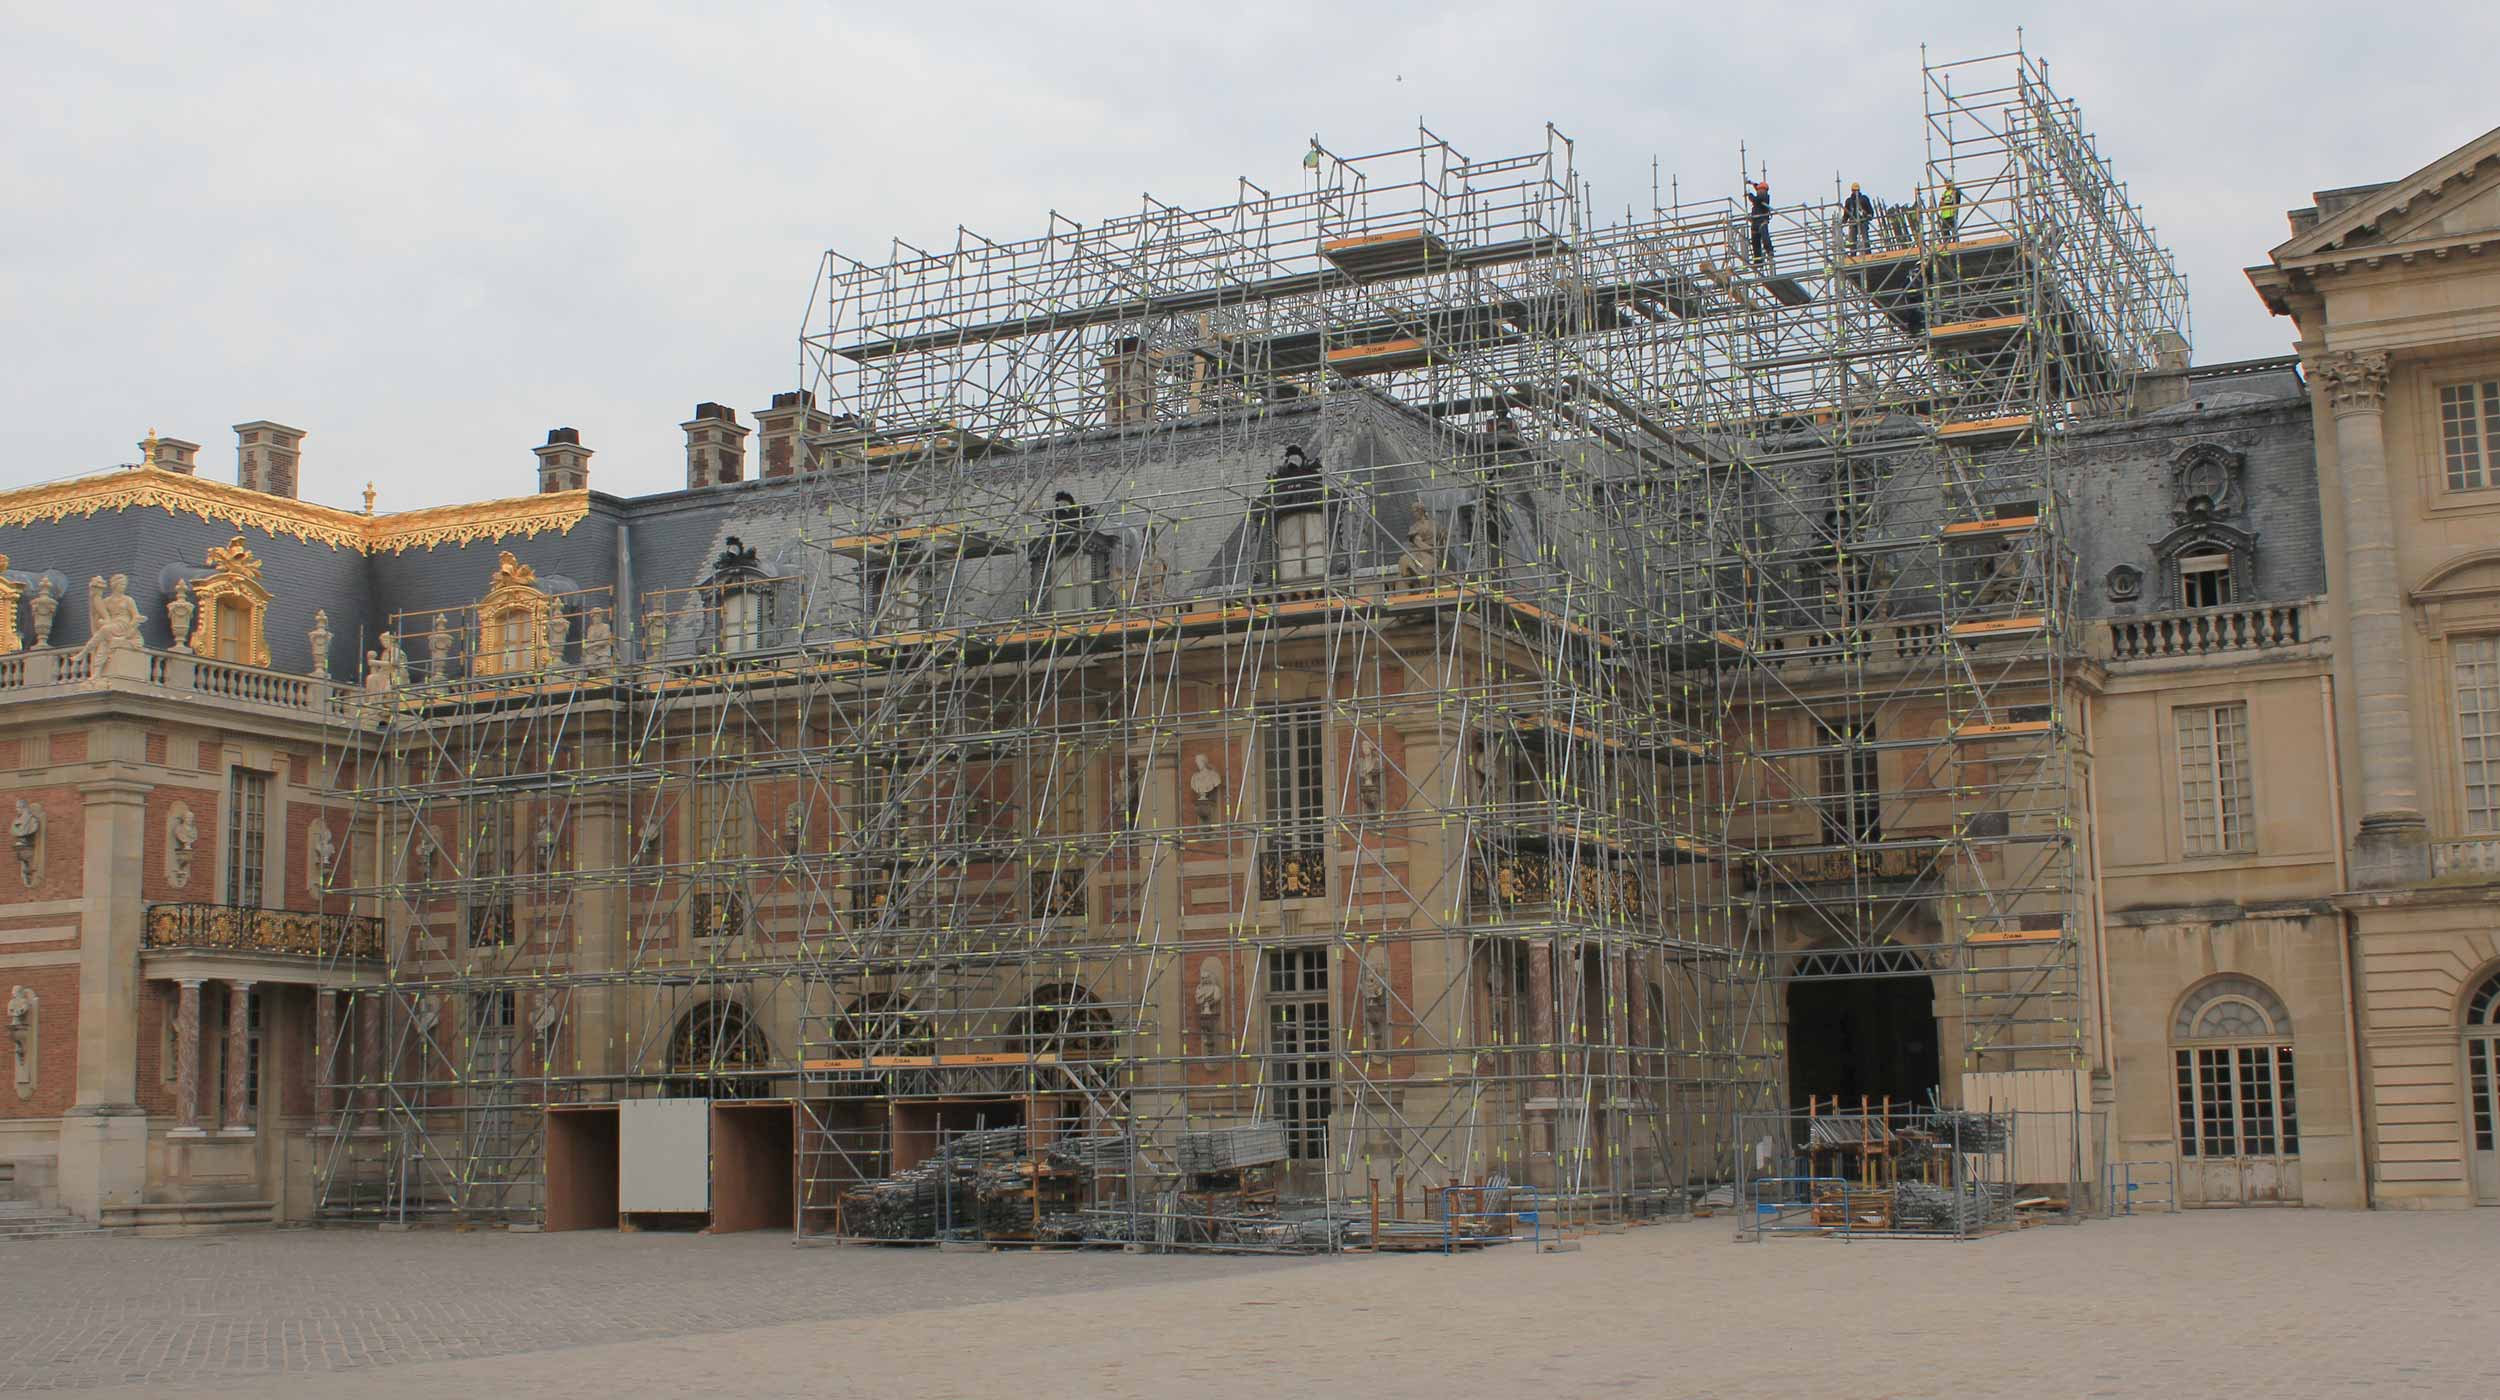 La restauration de la résidence des monarques français et un site classé au patrimoine mondial de l’humanité par l’UNESCO, a impliqué de nombreux travaux depuis les échafaudages.